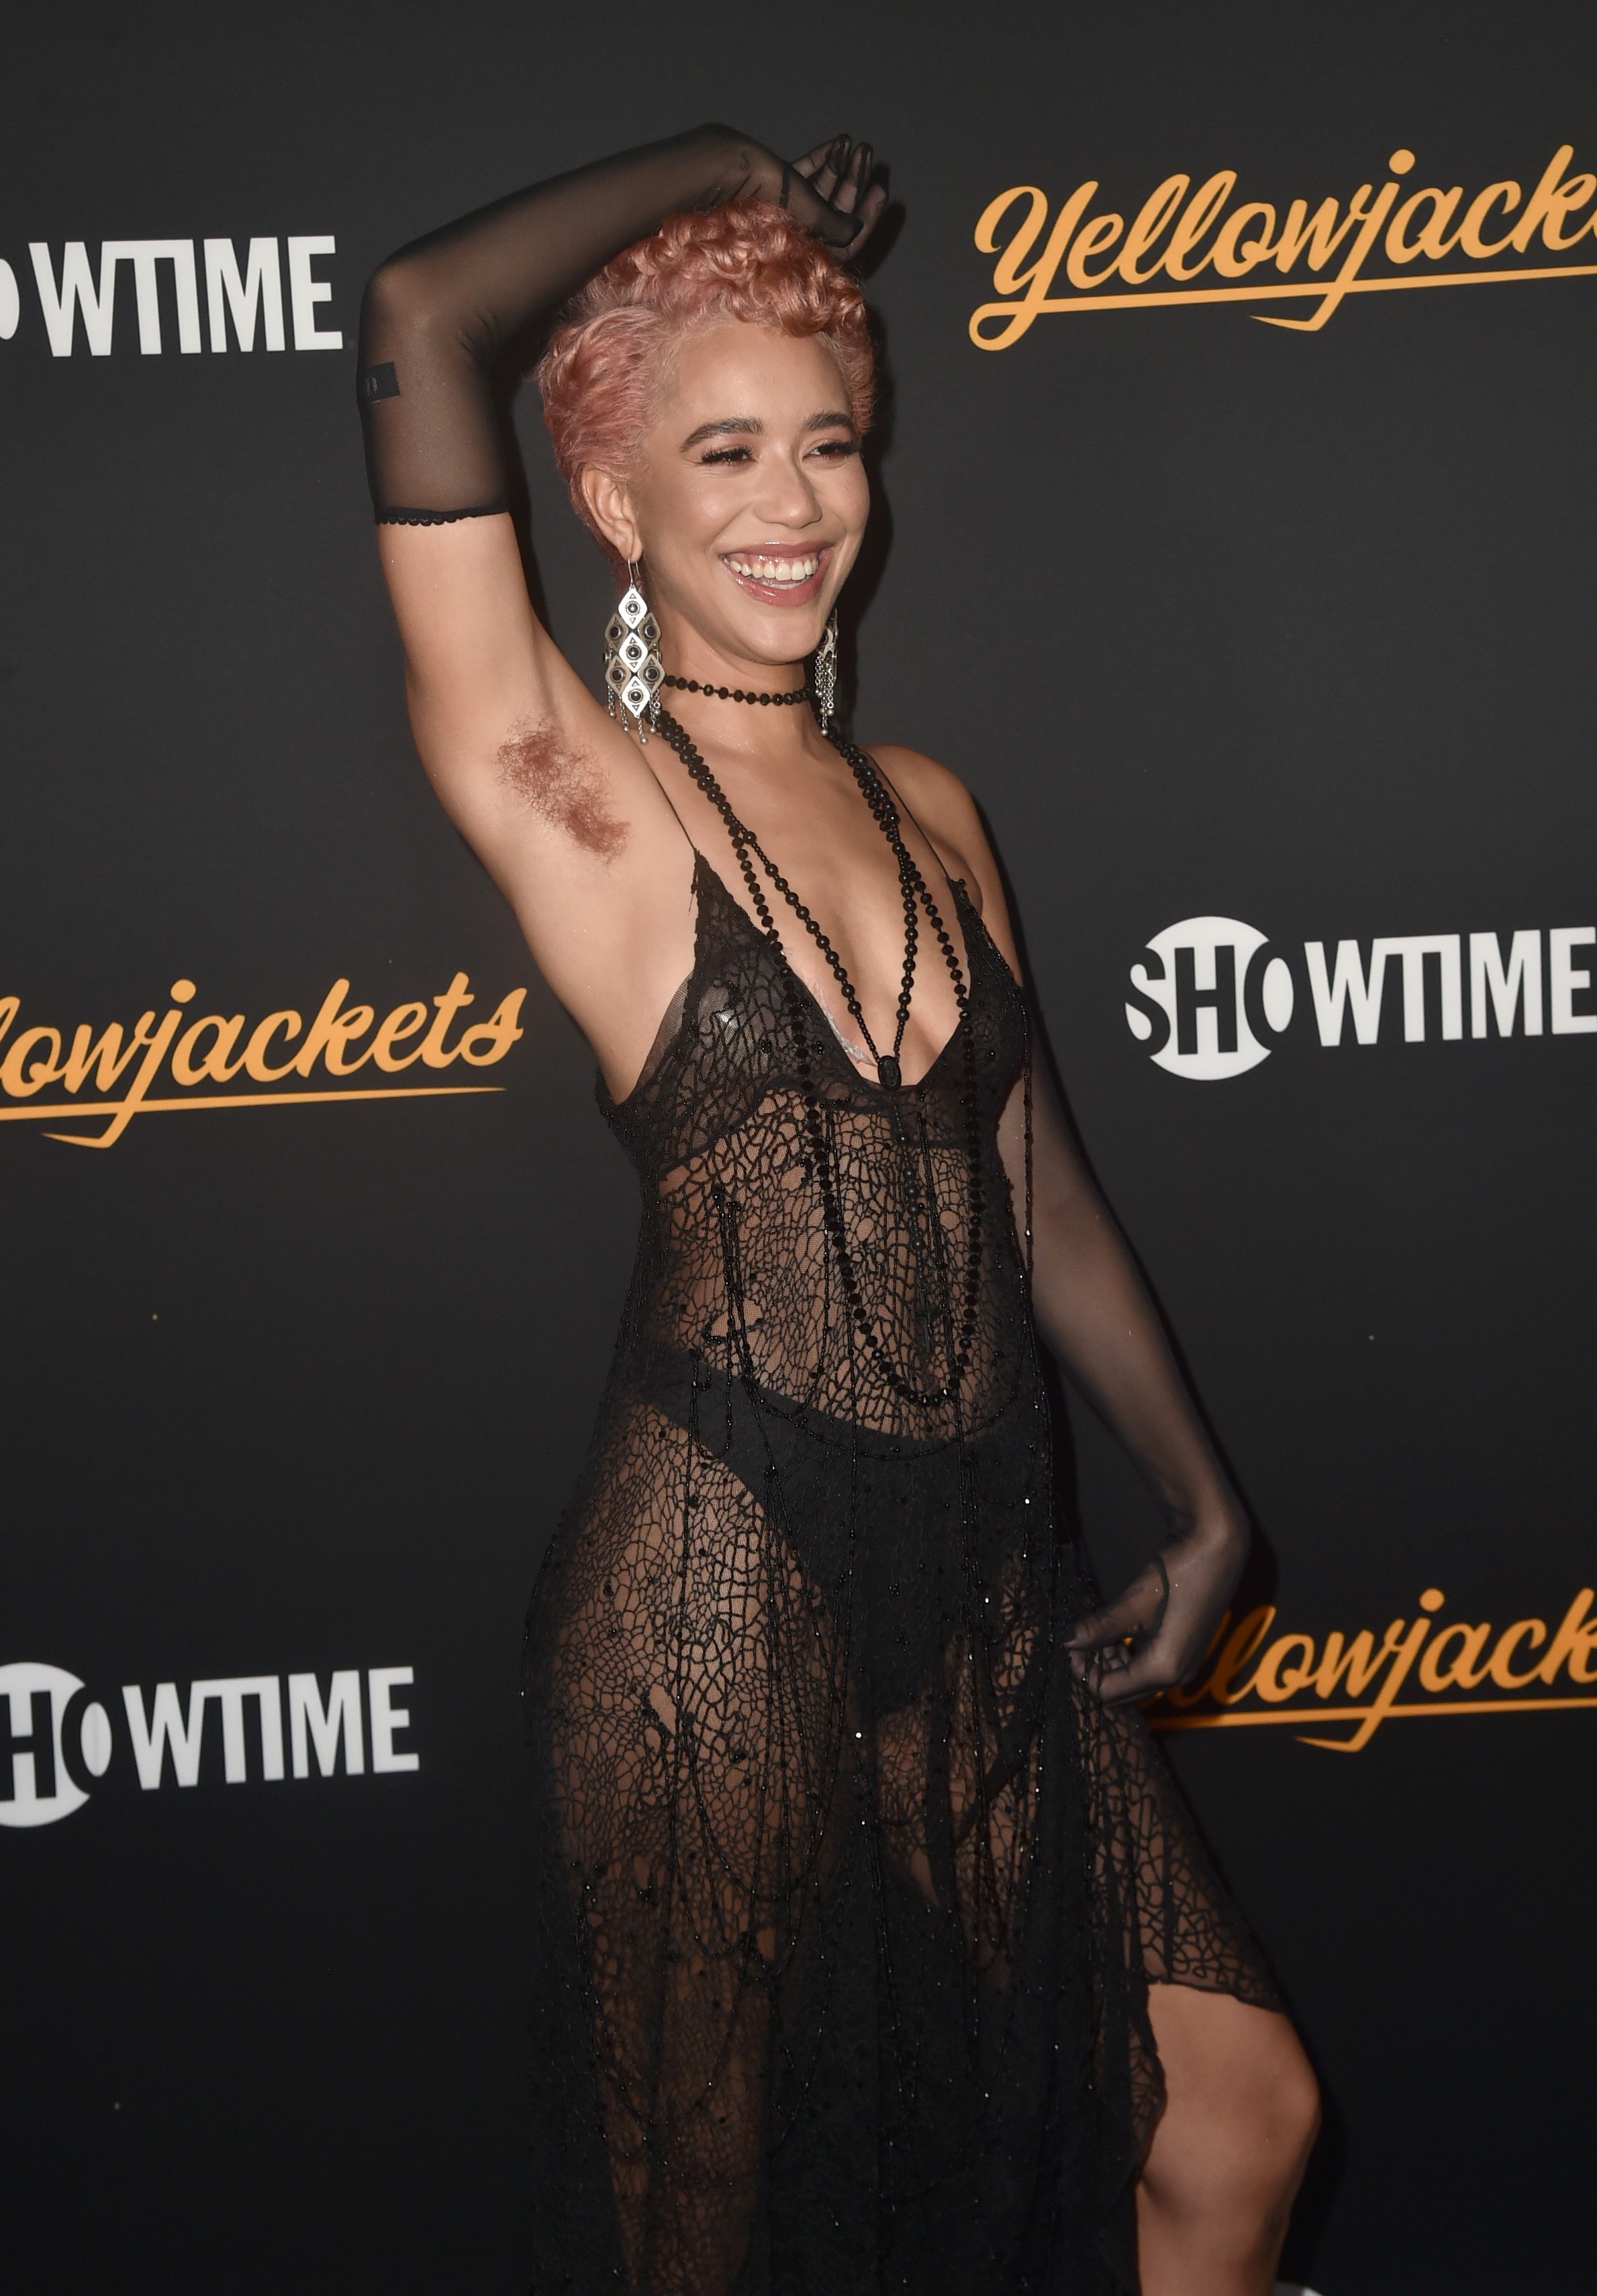  Jasmin Savoy Brown na première da série Yellowjackets em Hollywood em novembro de 2021 (Foto: Getty Images)